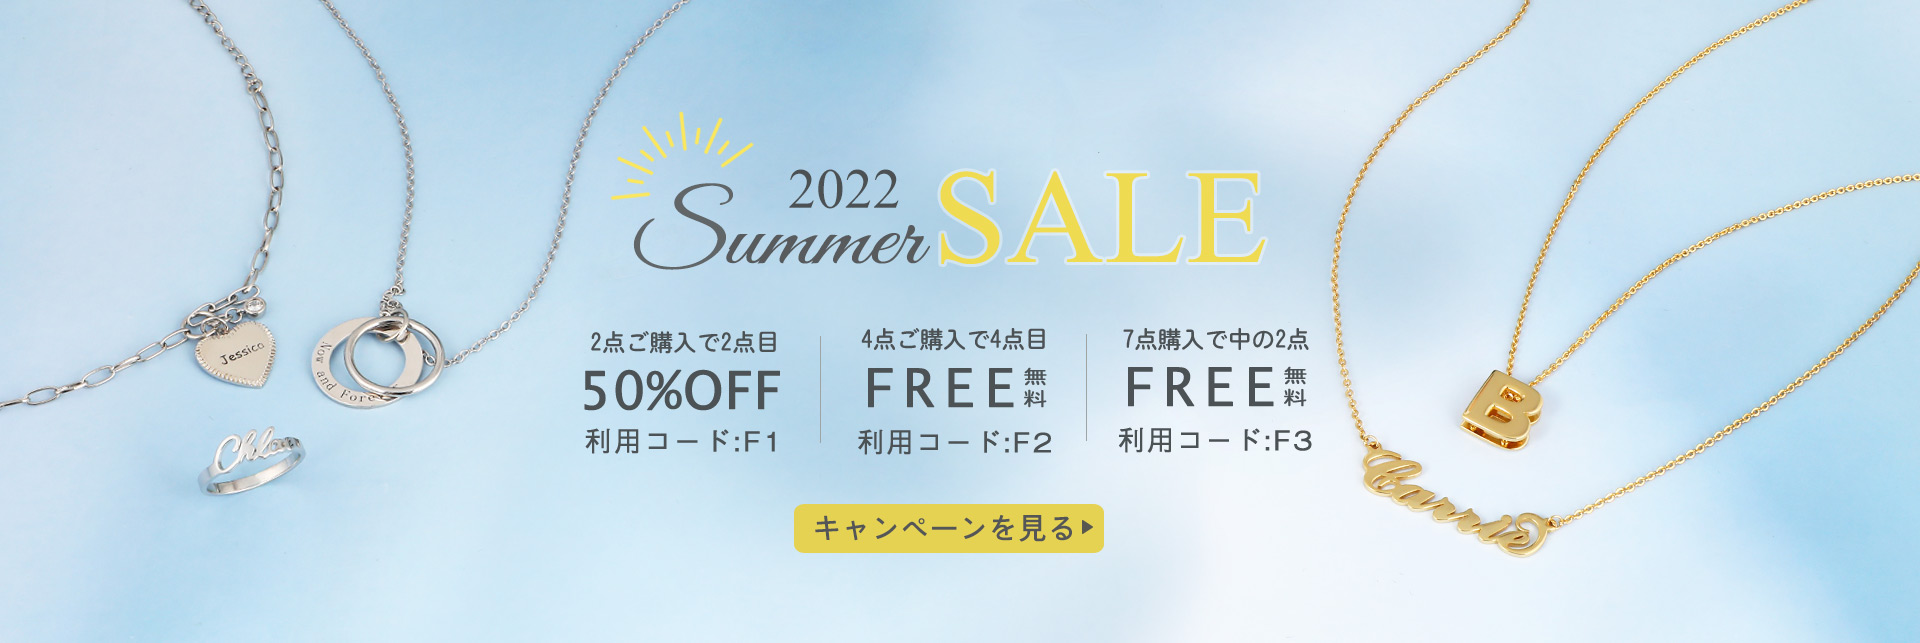 summer-sale-2022